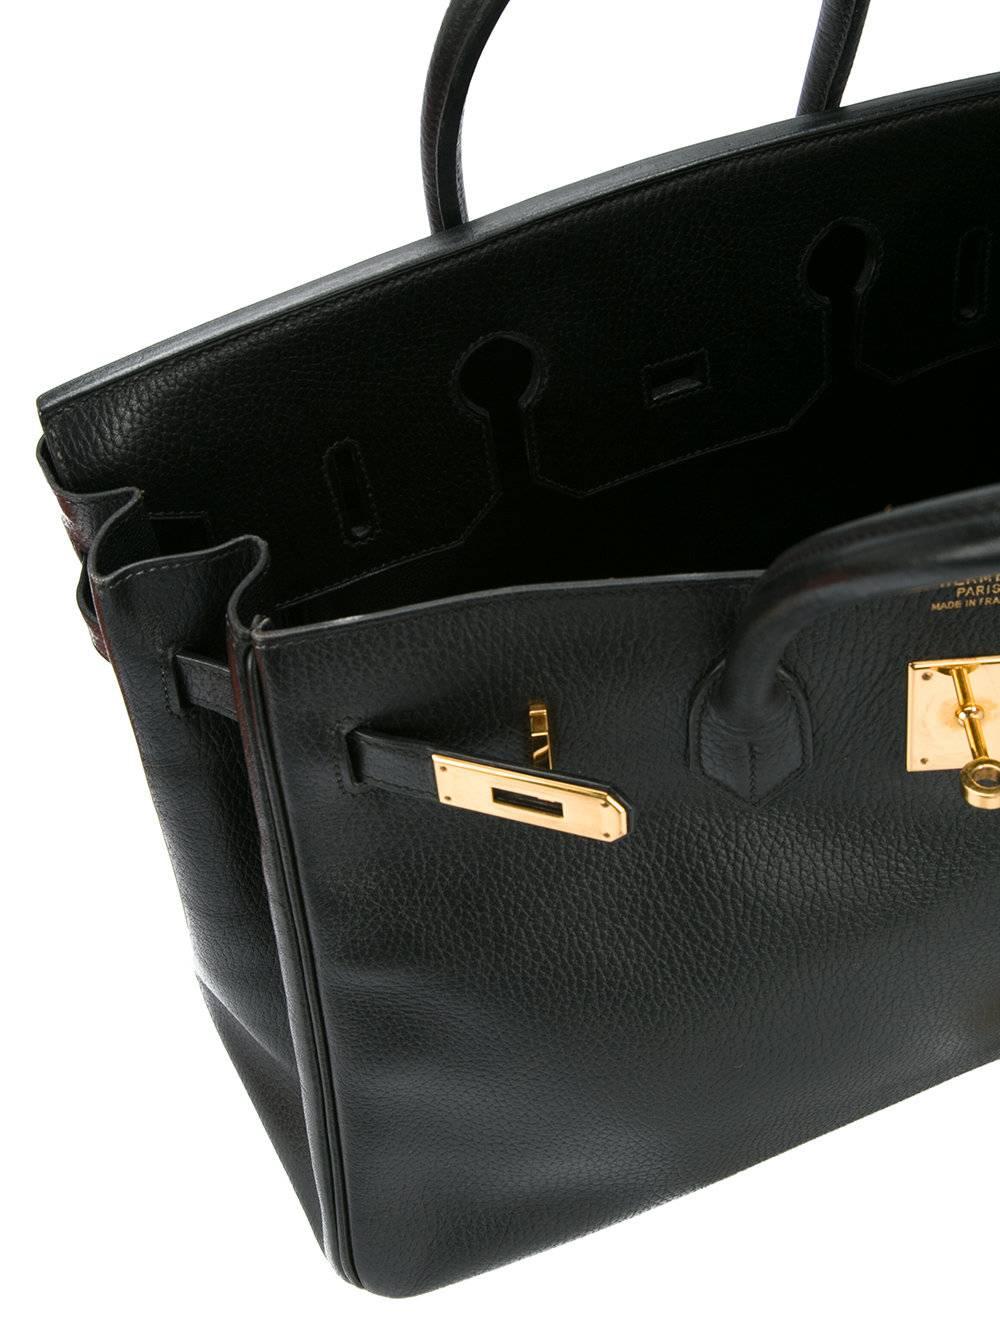 Hermes 35 Black Leather Gold Carryall Tote Top Handle Satchel Shoulder Bag 3